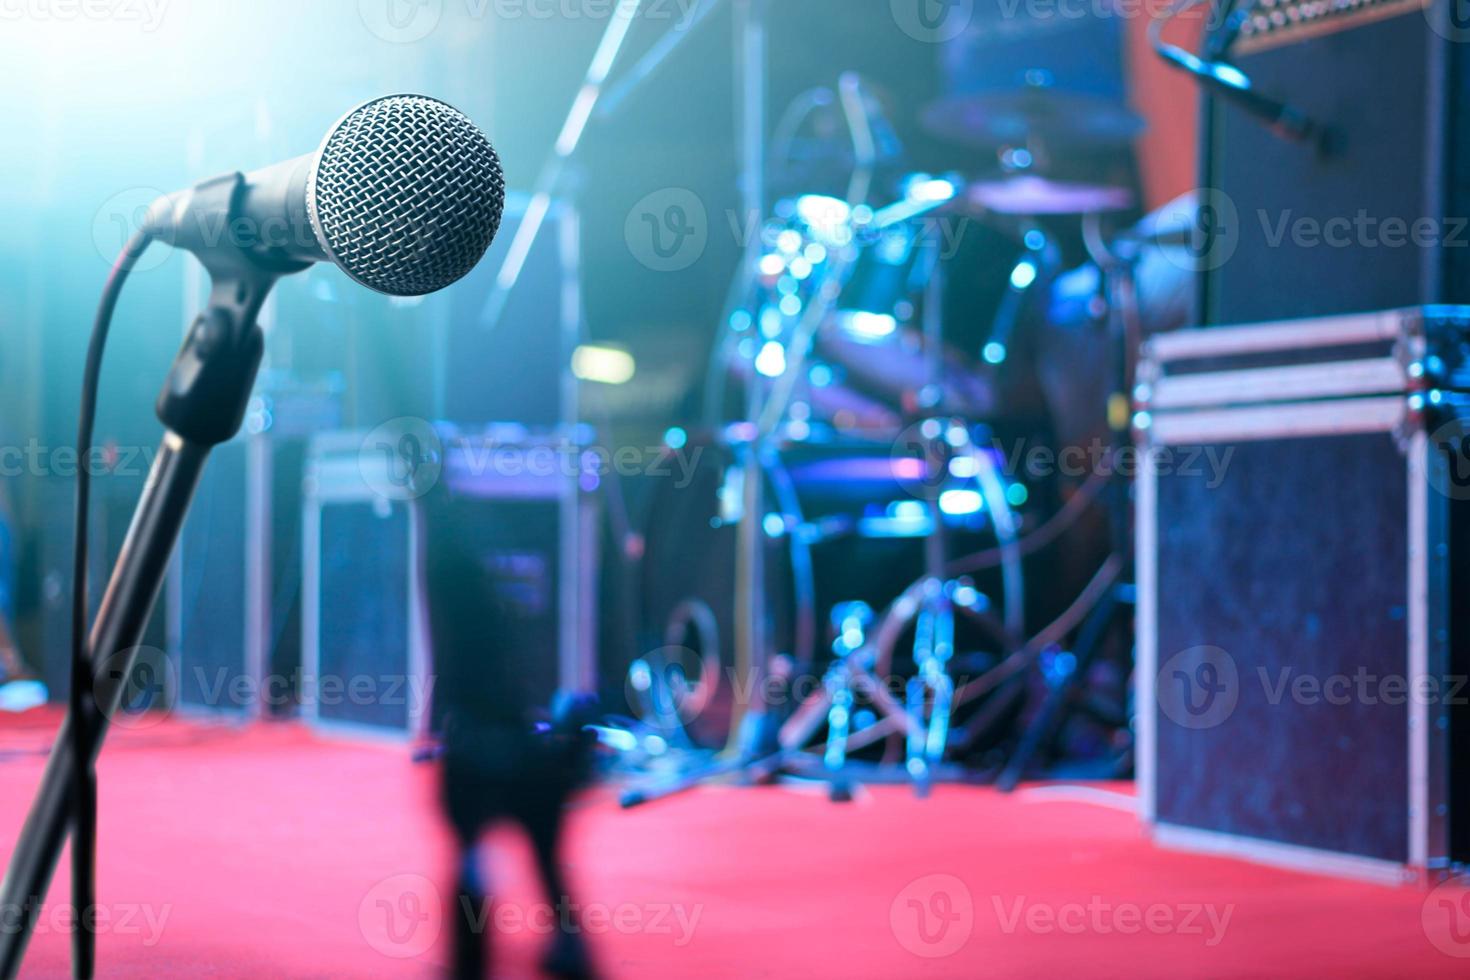 mikrofon och musikinstrument på scenen för bakgrund foto